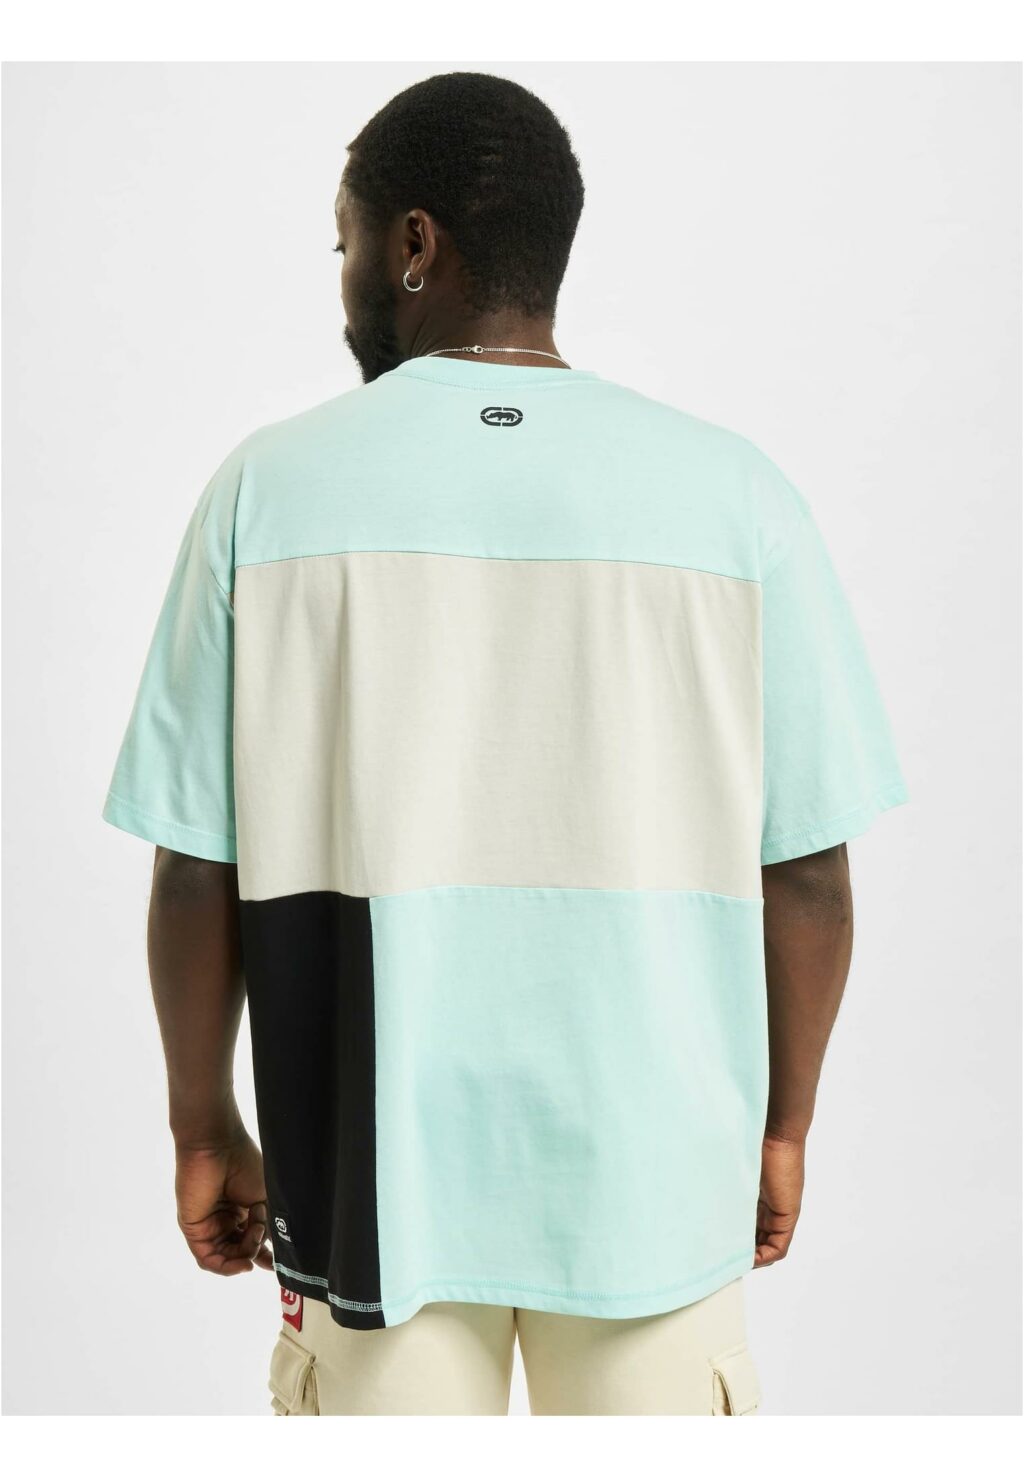 Cairns T-Shirt turquoise ECKOTS1106